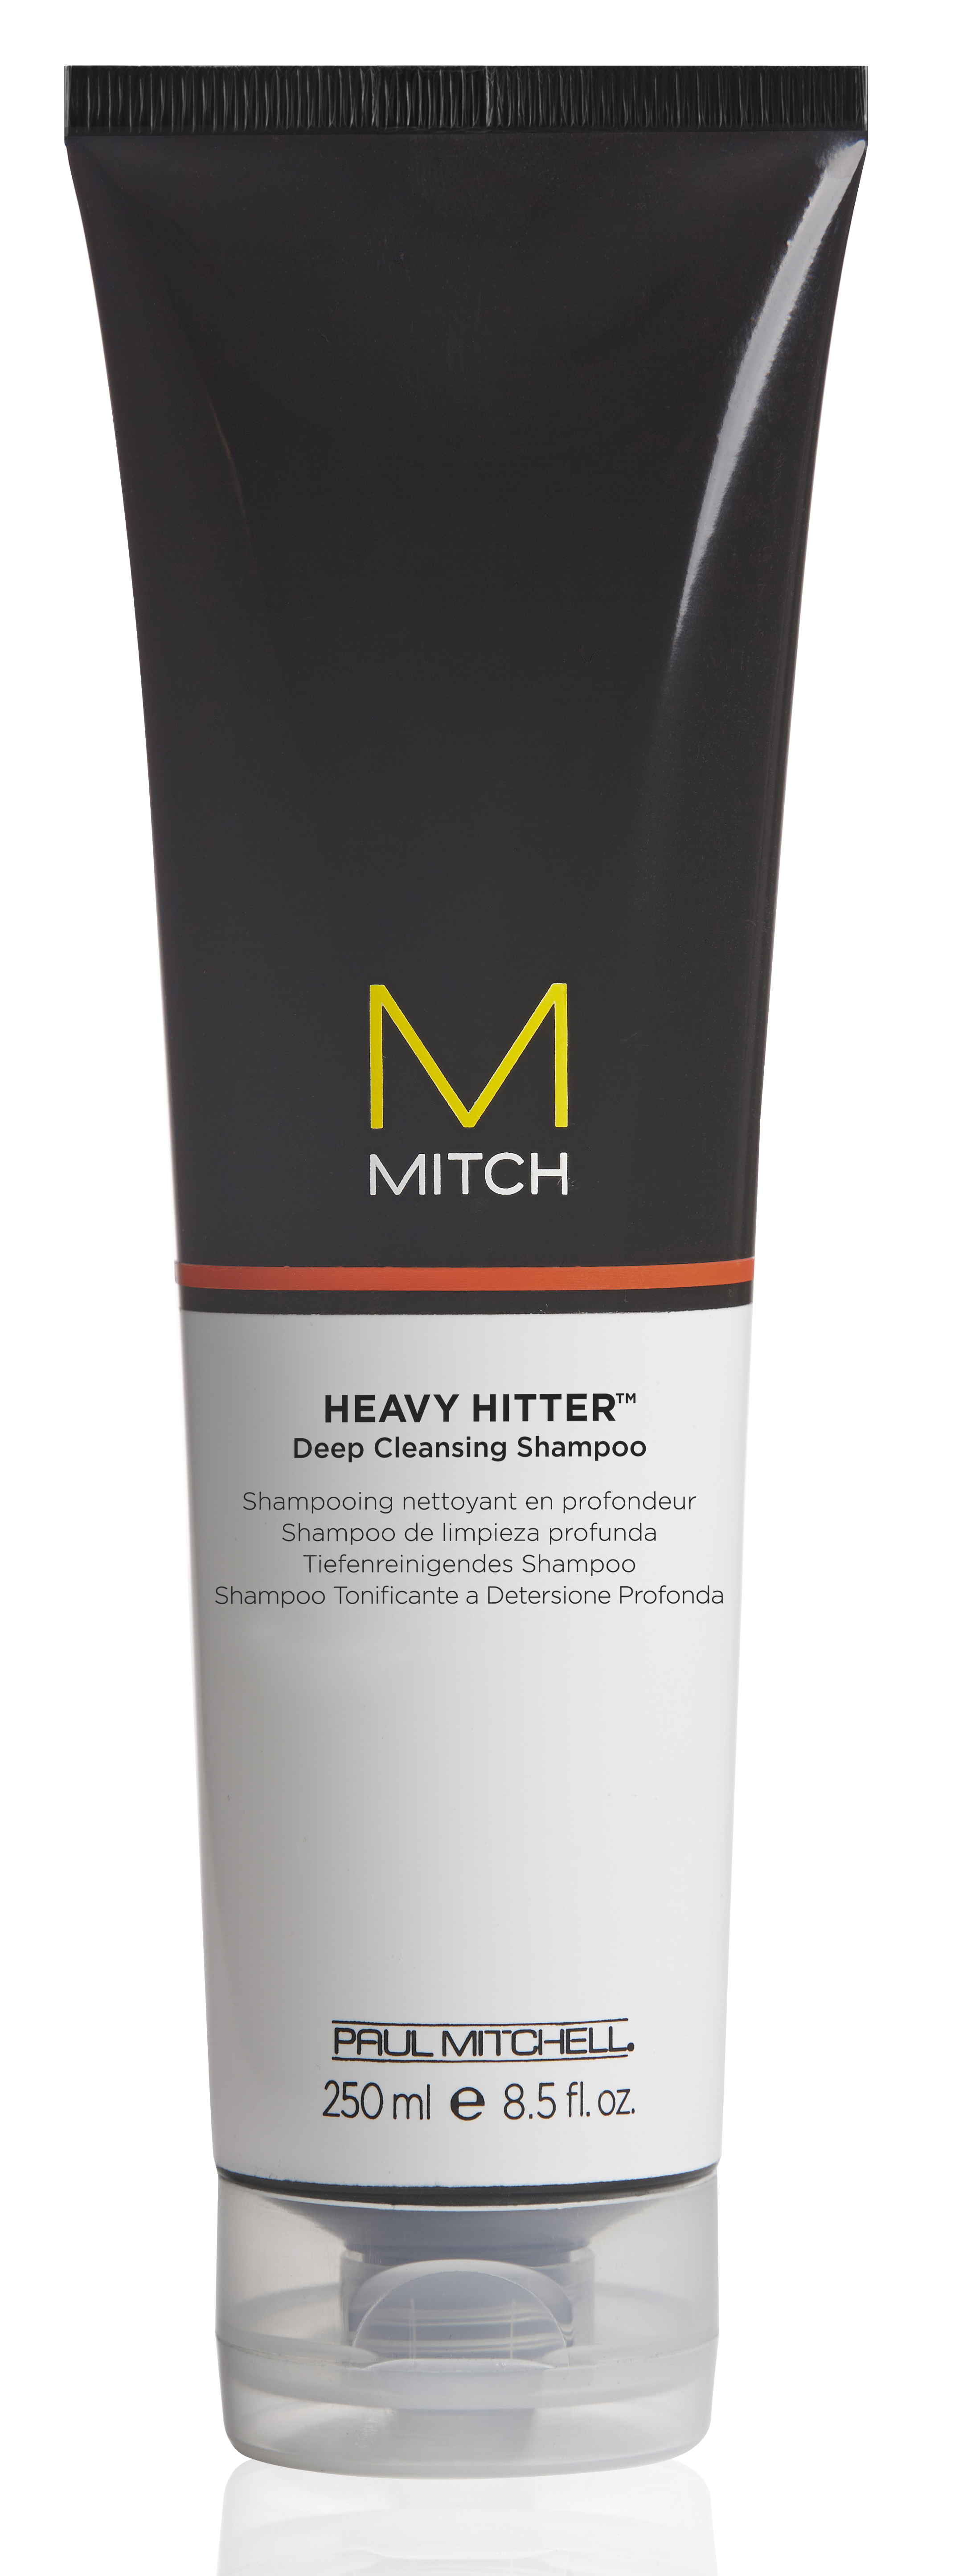 Mitch Heavy Hitter 